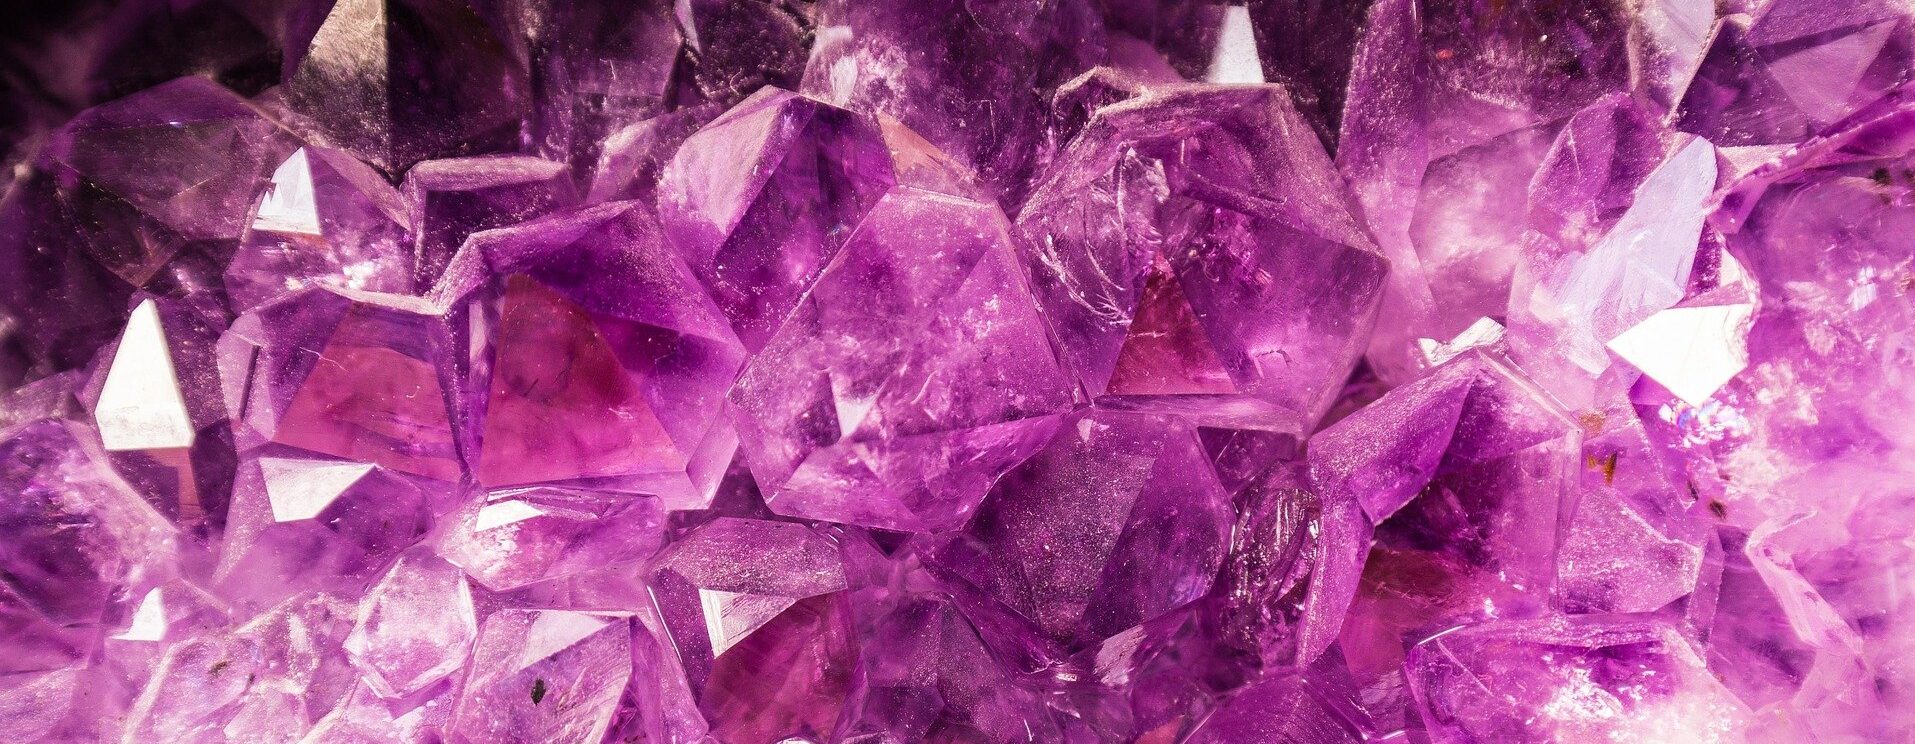 宝石】『アメシスト・紫水晶』古代から共に歩んできた輝石 | Archaique